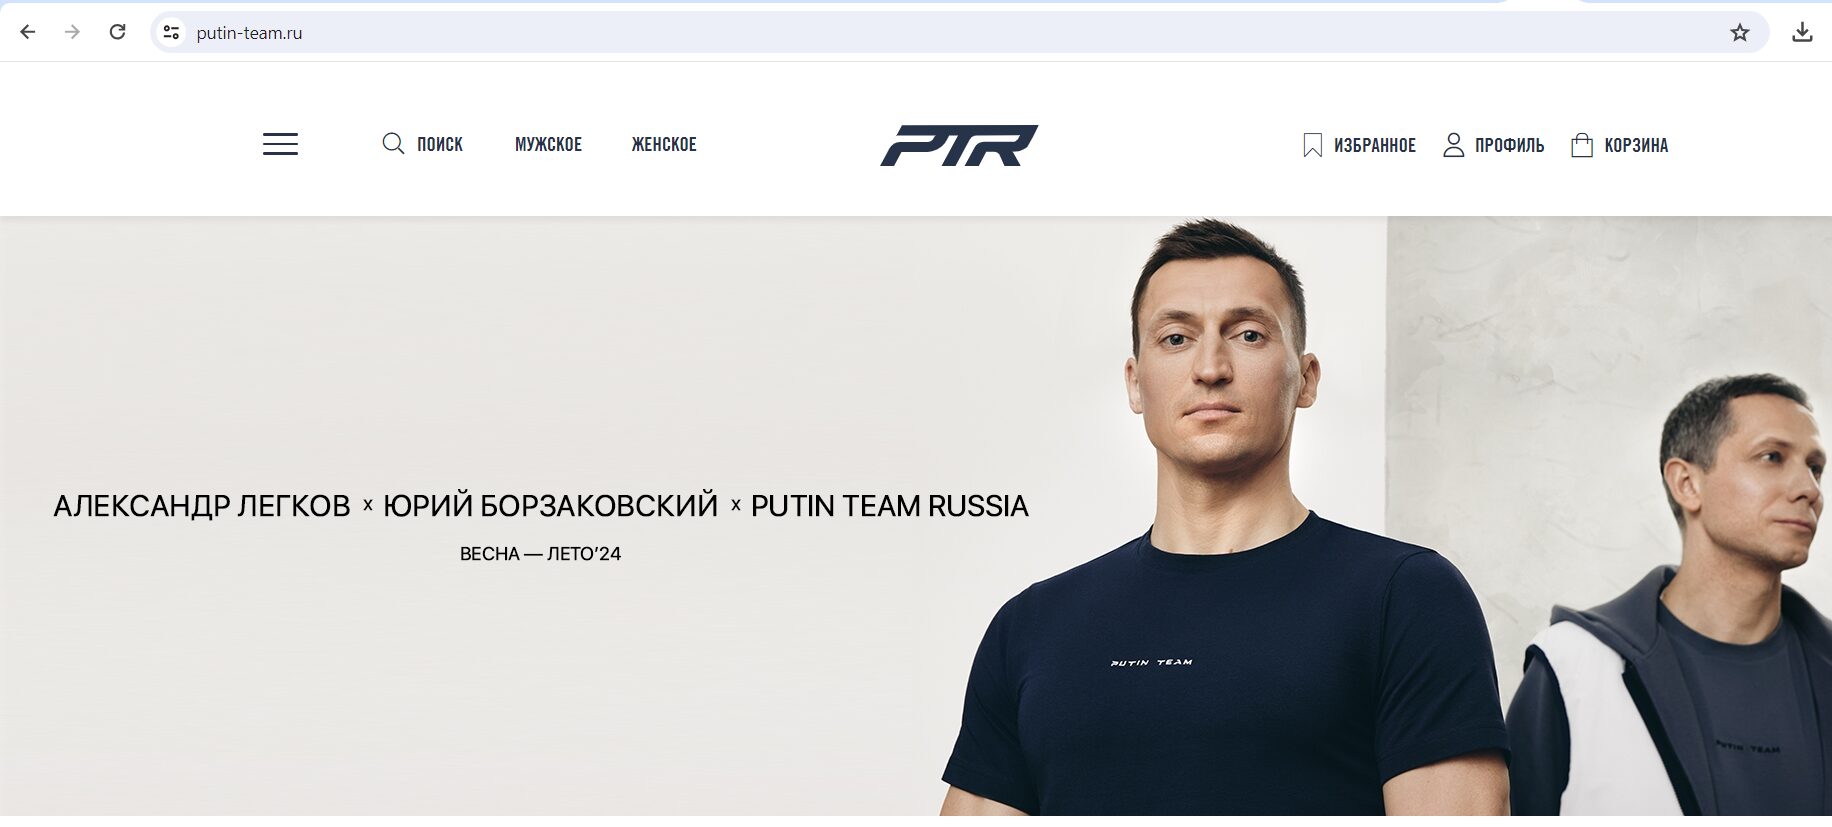 Bolea, din echipa liderului de la Kremlin? Cum explică mesajul „Putin Team” de pe tricoul purtat la Parlament